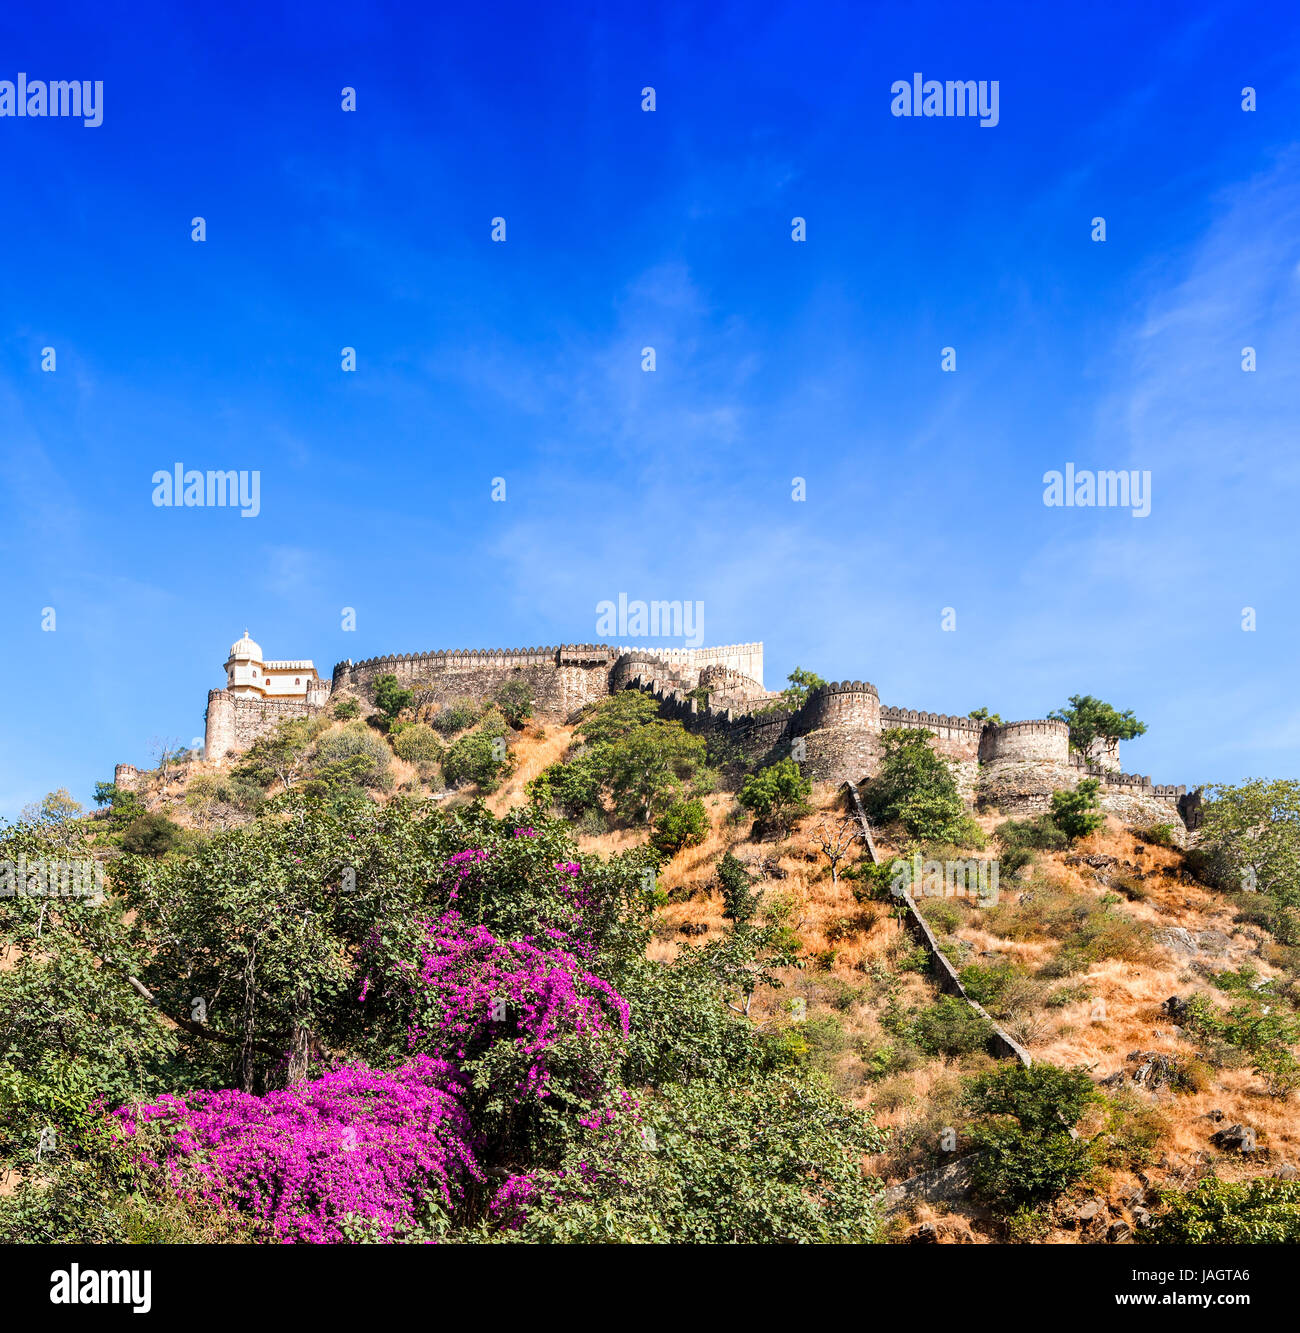 Kumbhalgarh Fort, Rajasthan, Indien.  Kumbhalgarh ist eine Mewar Festung im Rajsamand Bezirk von Rajasthan Zustand im Westen Indiens und ist weltbekannt für seine große Geschichte. Stockfoto